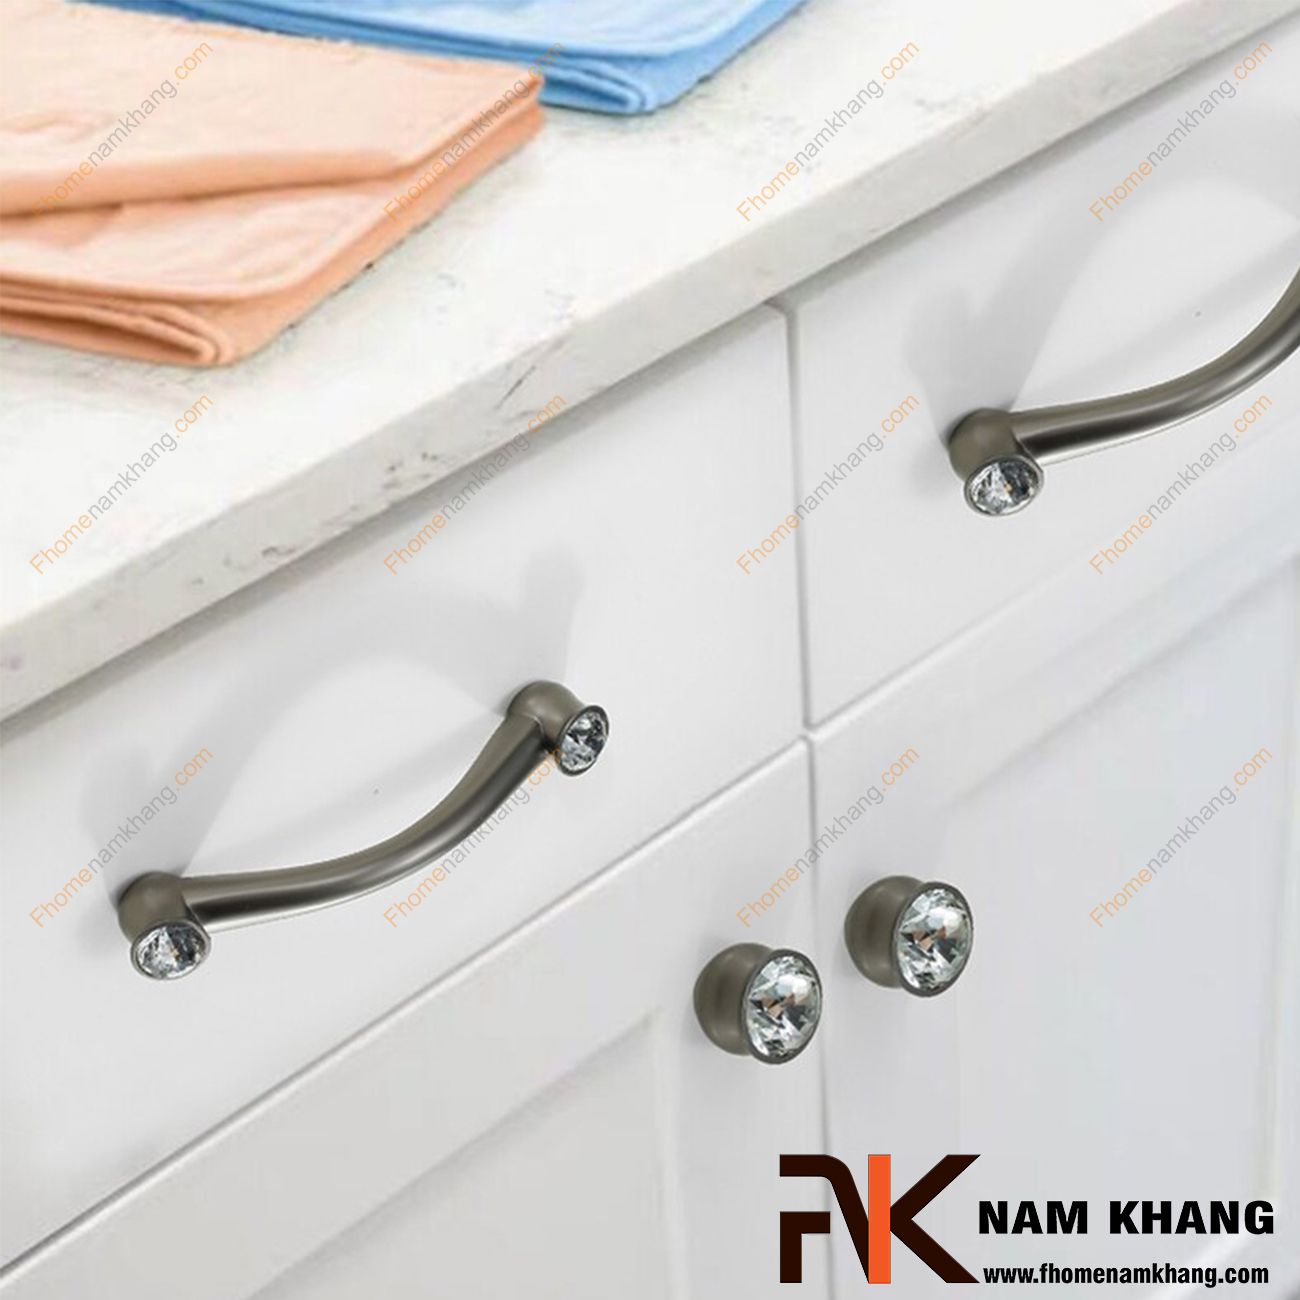 Núm cửa tủ kết hợp đá pha lê NK439-XBD đa dạng ở các vị trí lắp đặt bao gồm cả nội thất, ngoại thất, tủ kệ, tủ quần áo, tủ thời trang, tủ trang sức, ngăn kéo, ngăn bàn làm việc, tủ bếp,.